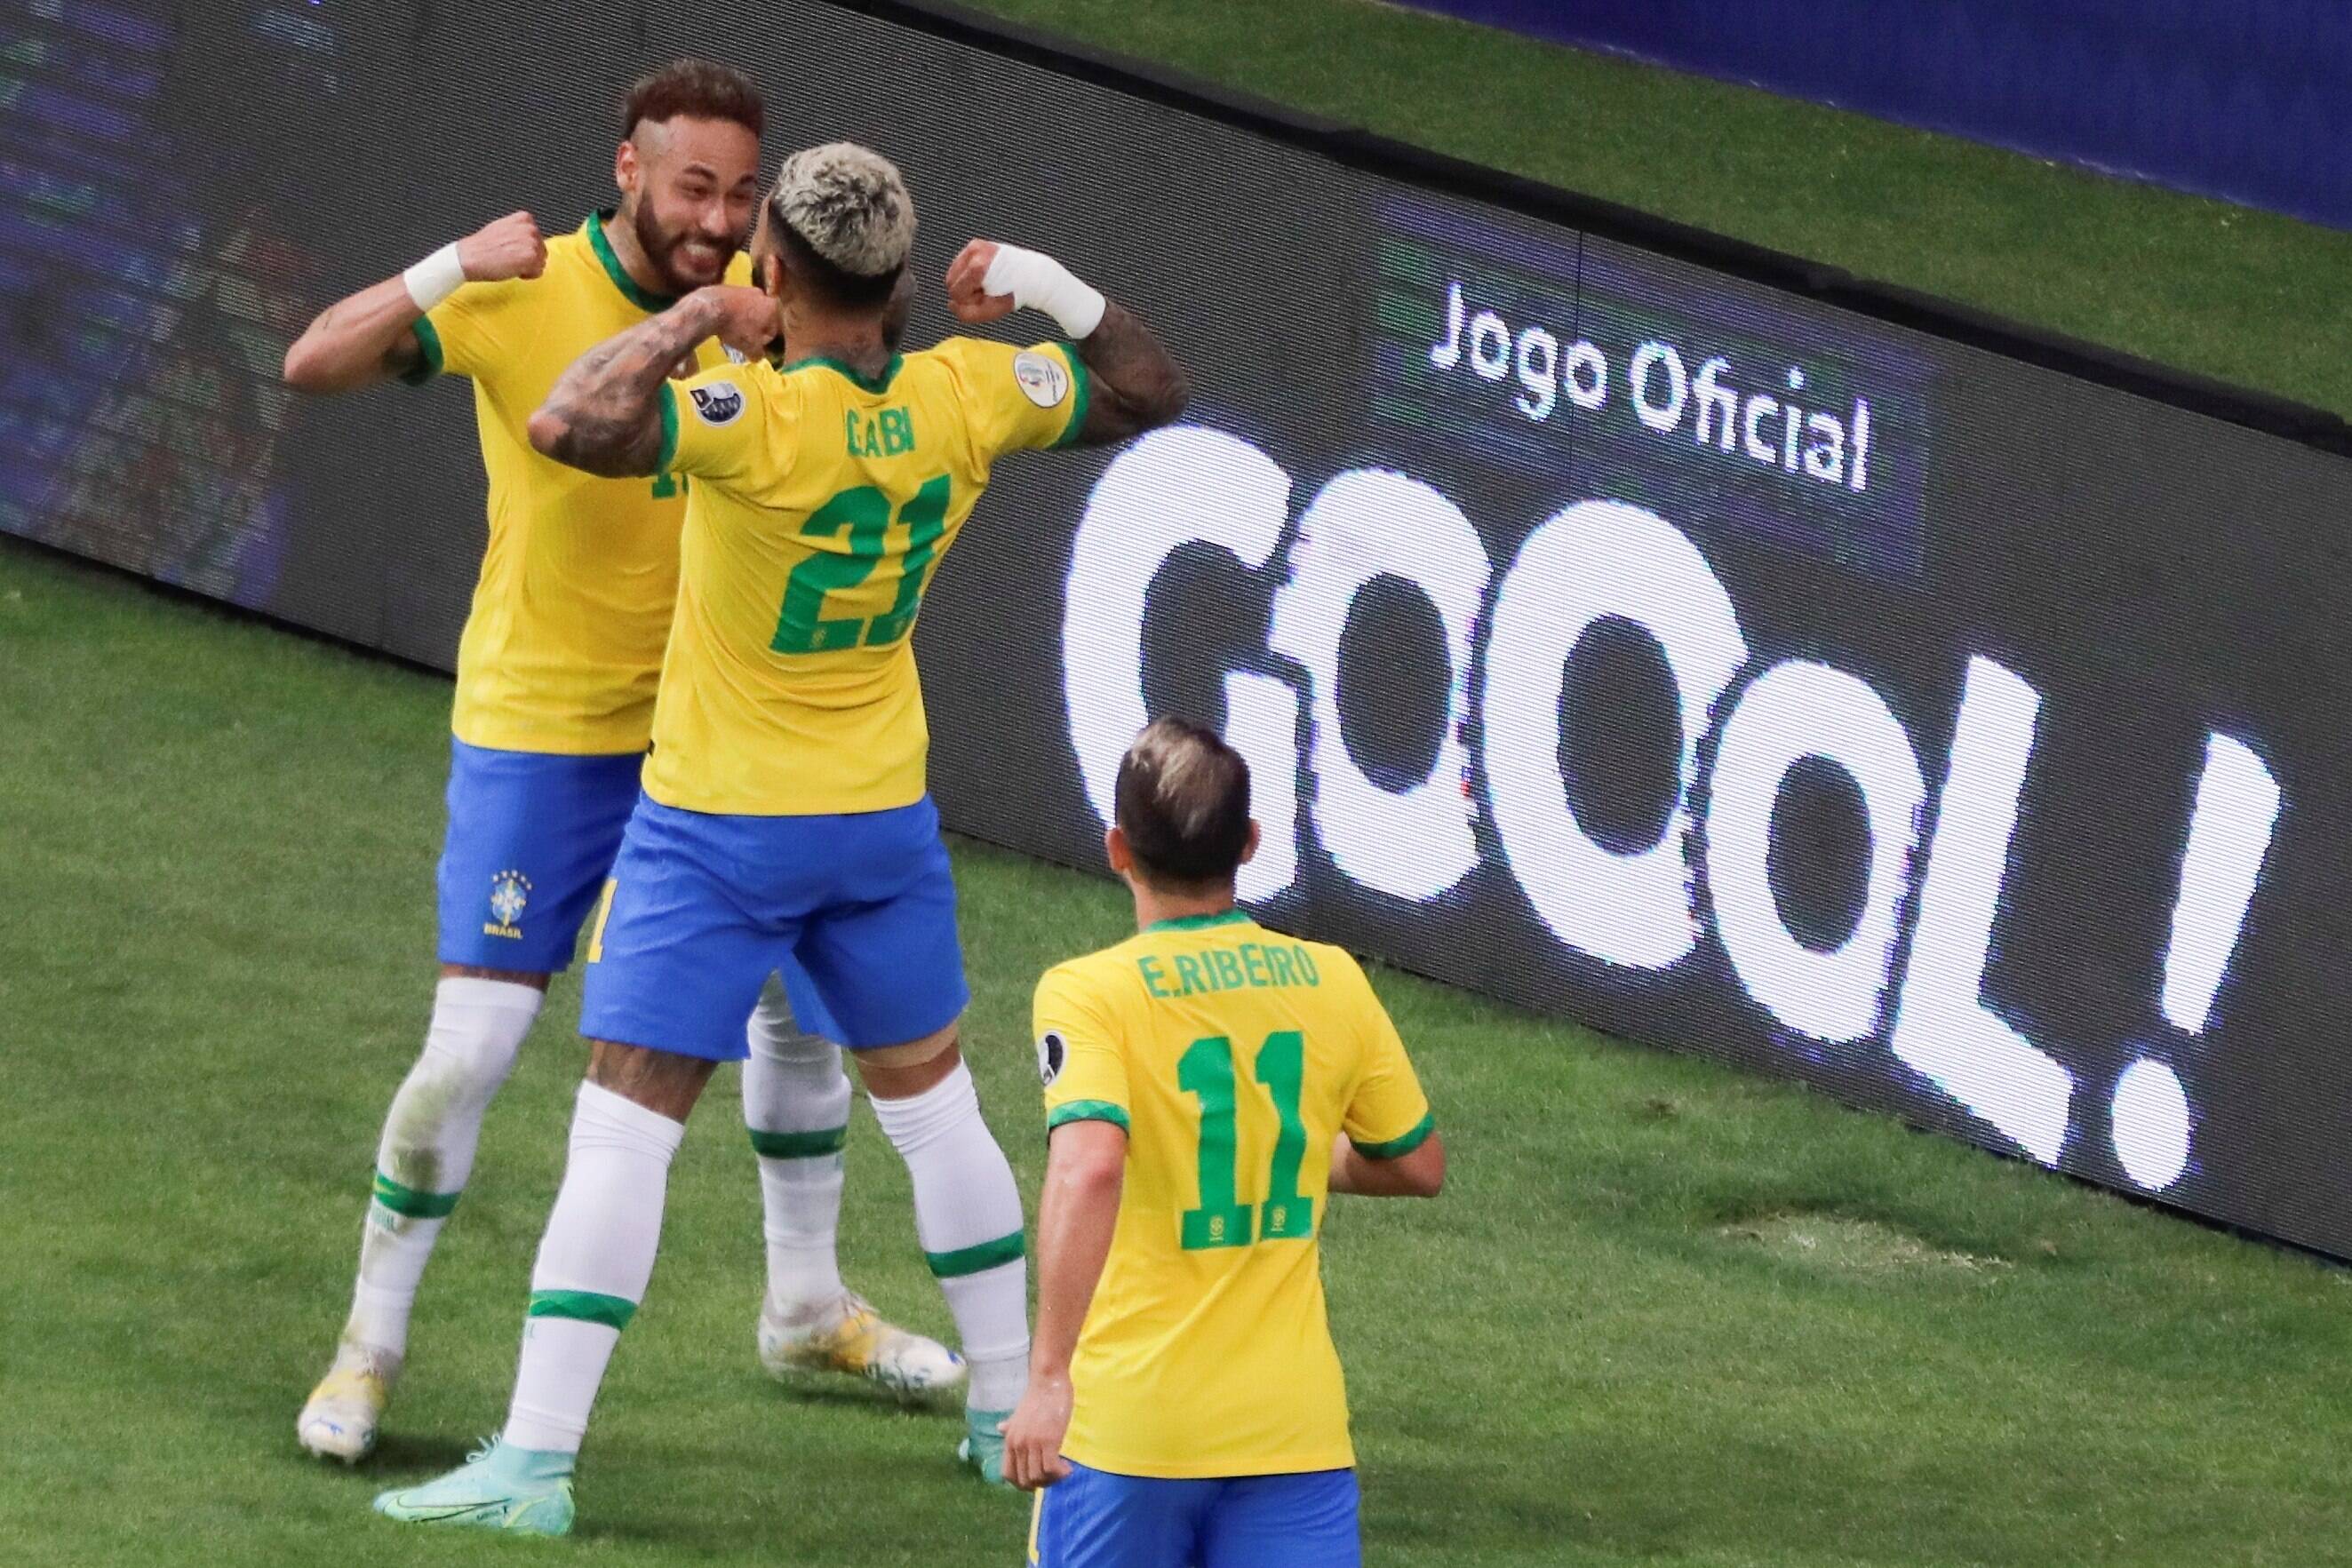 More goals than Ronaldo but Neymar is no Brazil legend yet